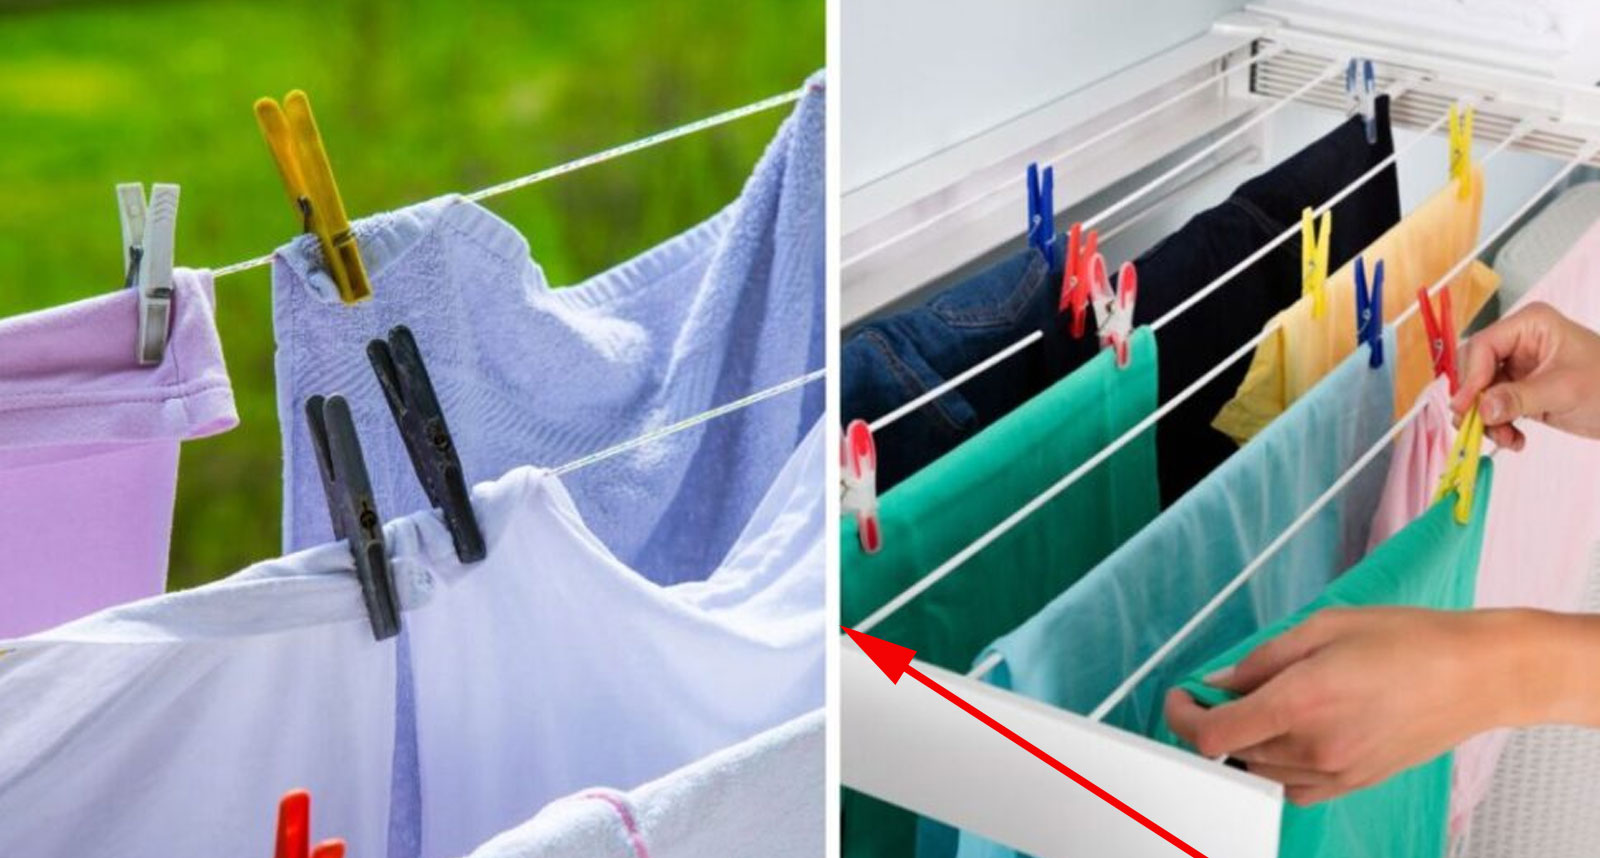 σωστό άπλωμα ρούχων,συμβουλές για ρούχα,κόλπα για ρούχα,ρούχα,χρήσιμα,